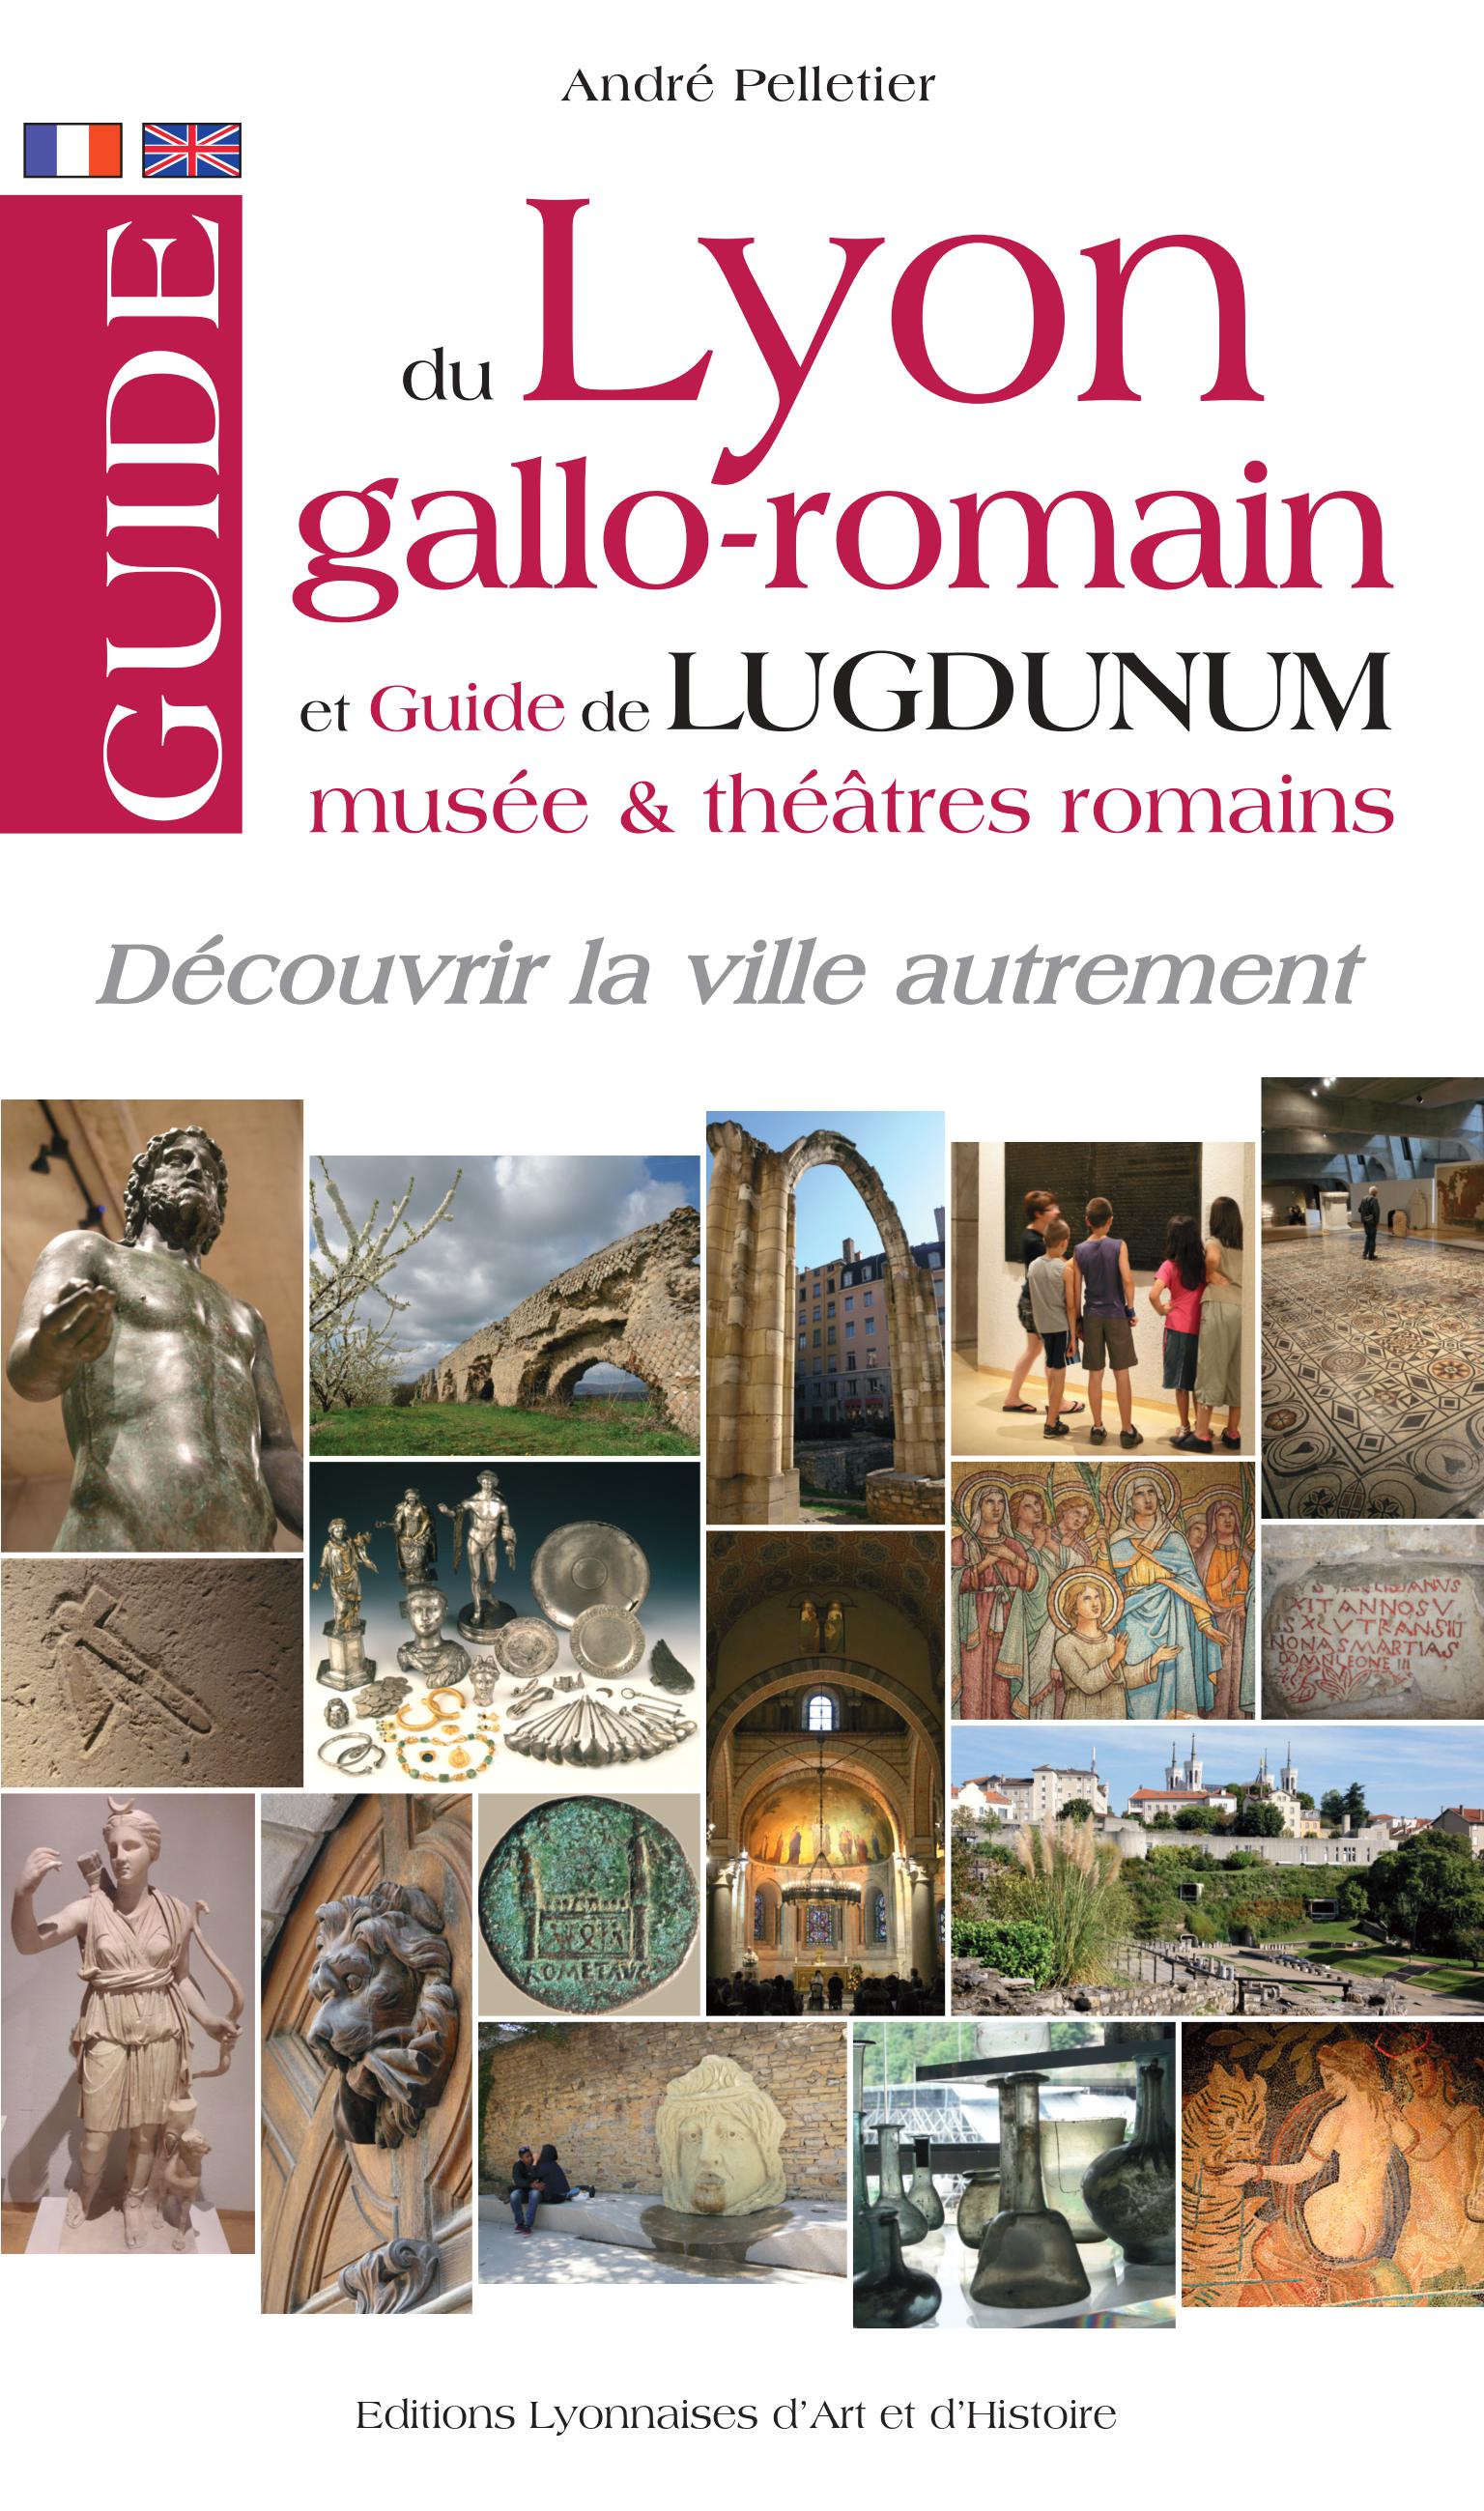 Guide du Lyon gallo-romain et Guide de Lugdunum - musées et théâtres romains, 2018, 120 p.